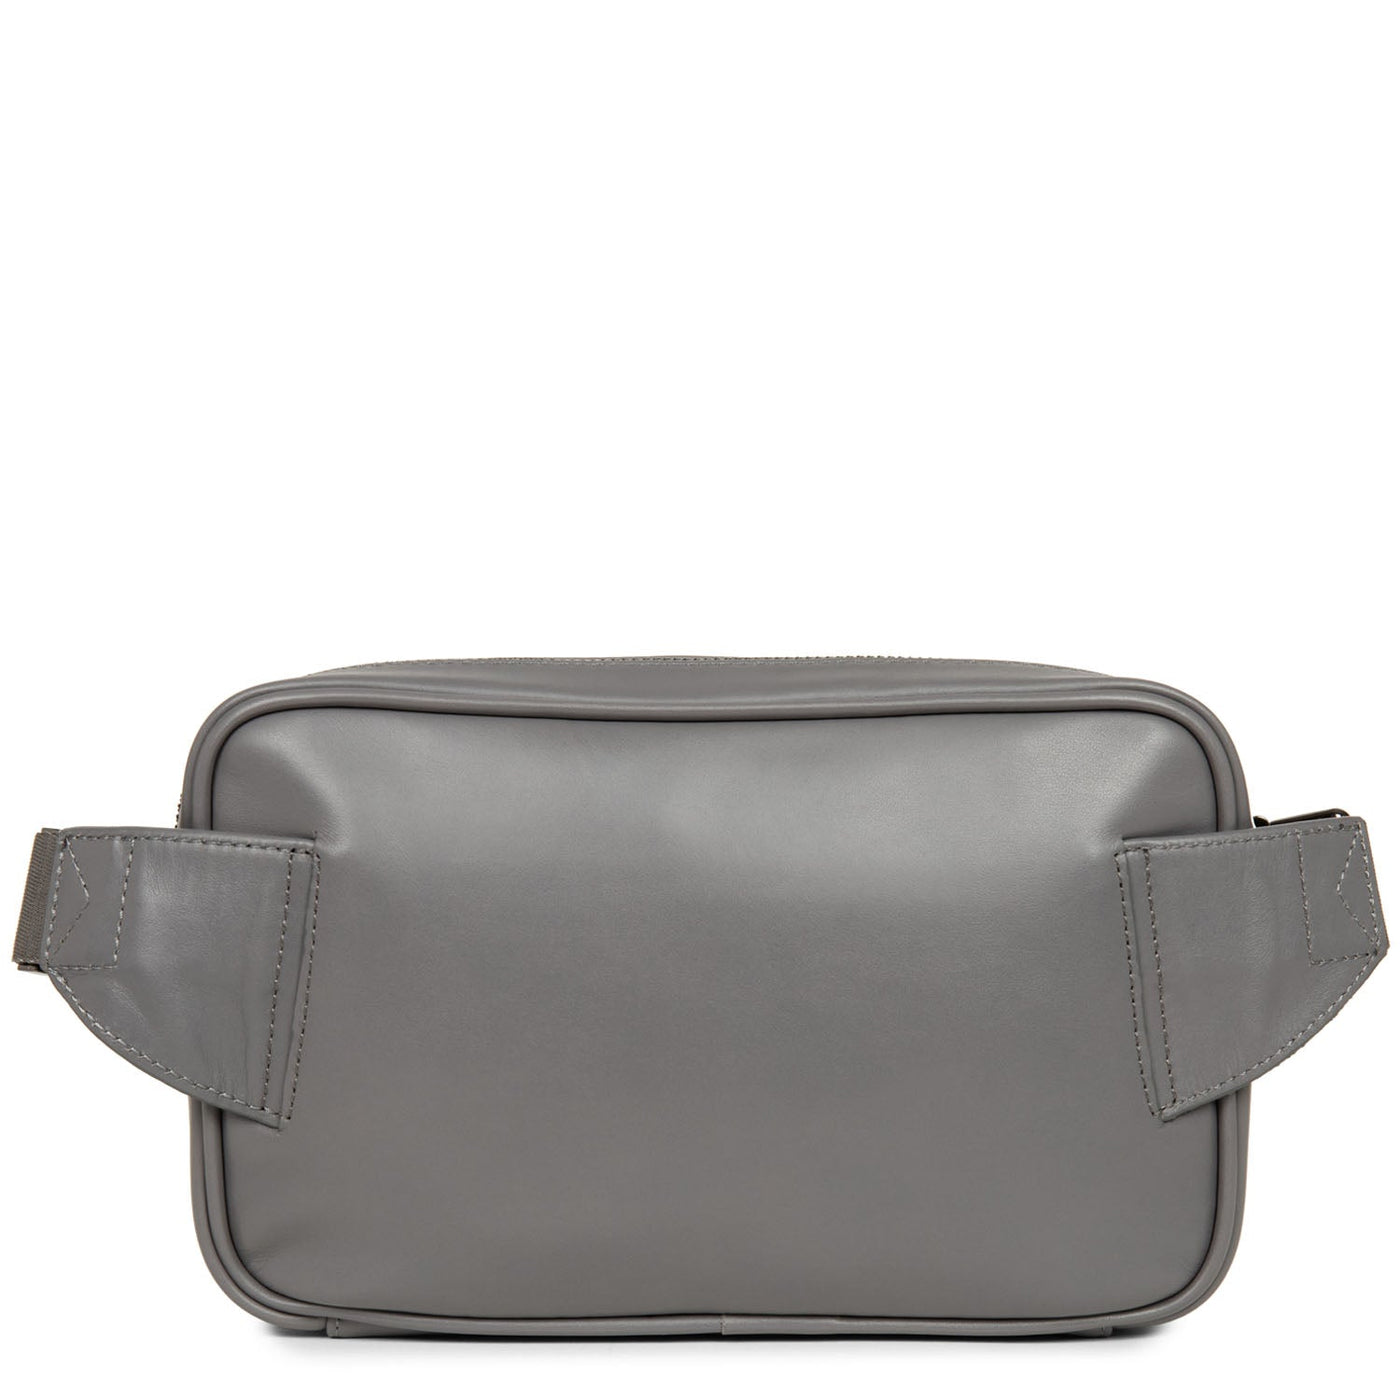 m belt bag - capital #couleur_gris